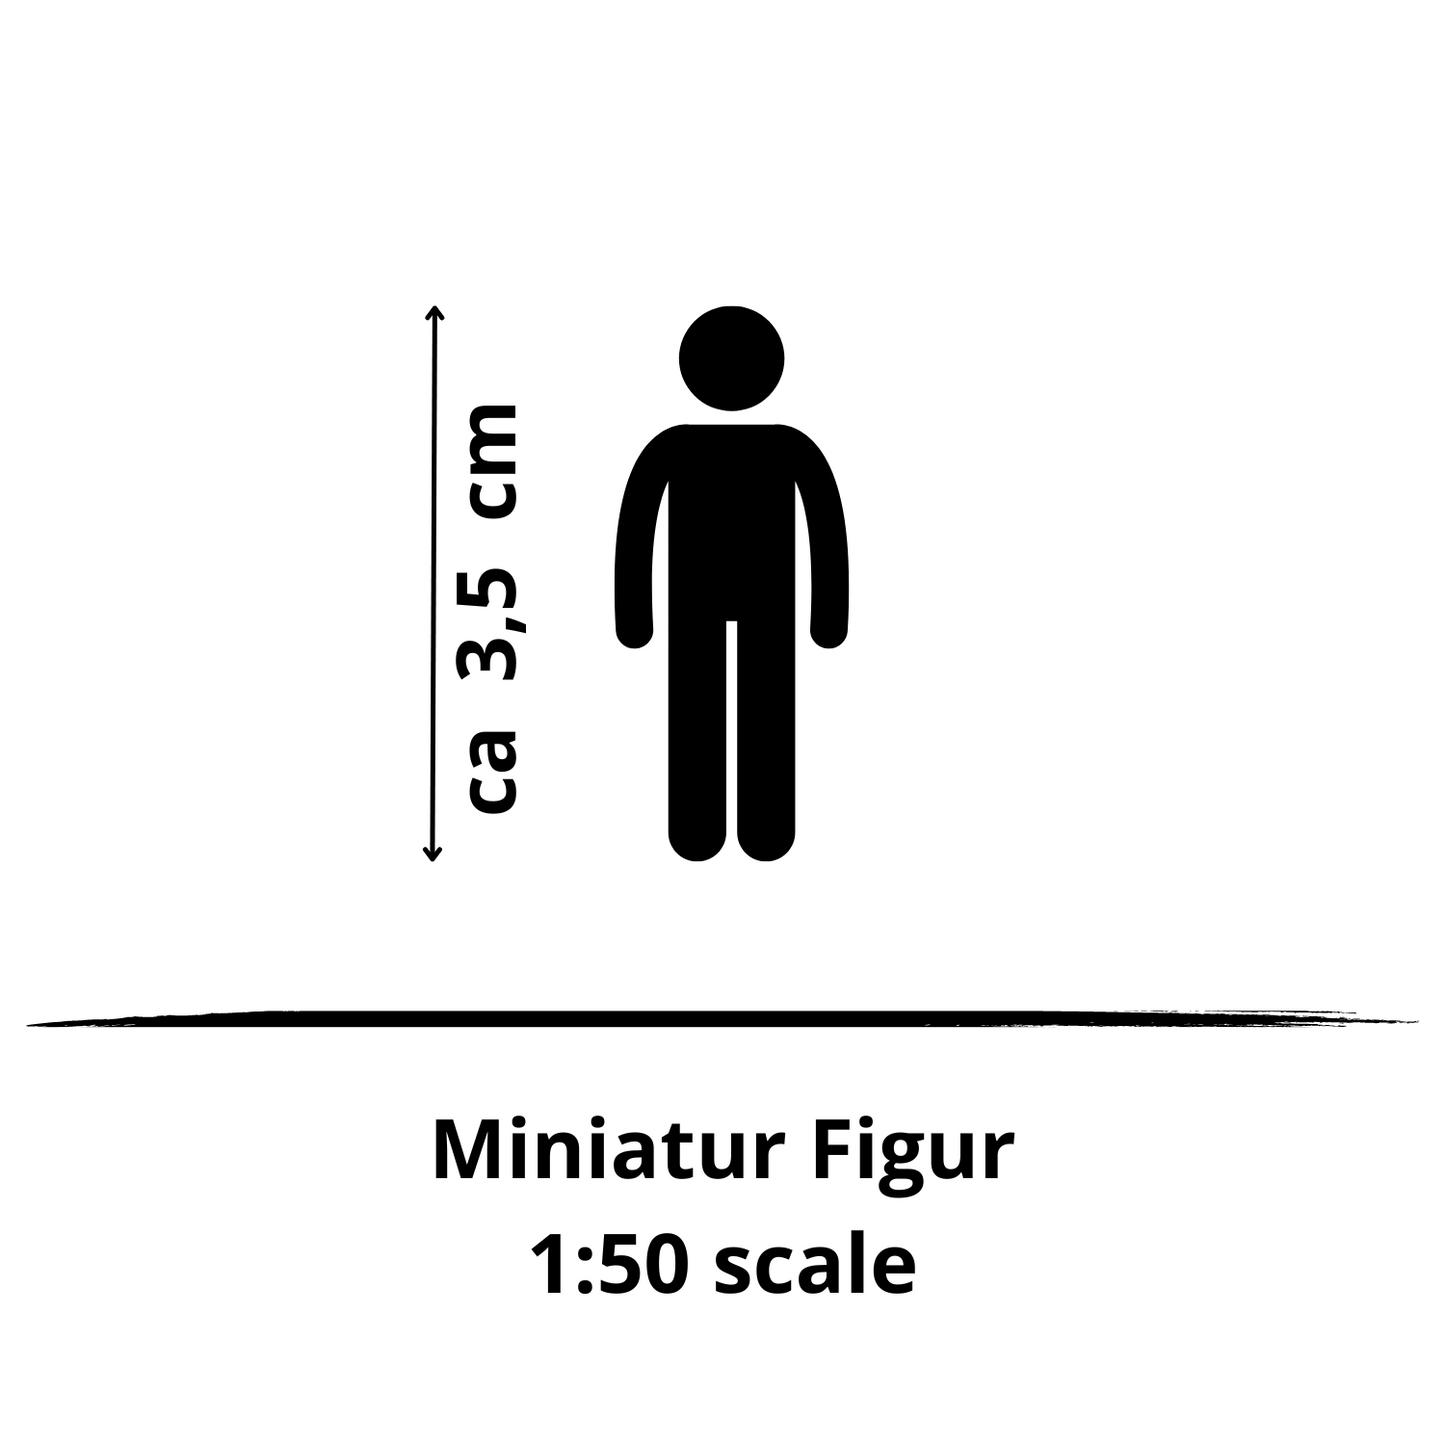 1:50 miniature figure